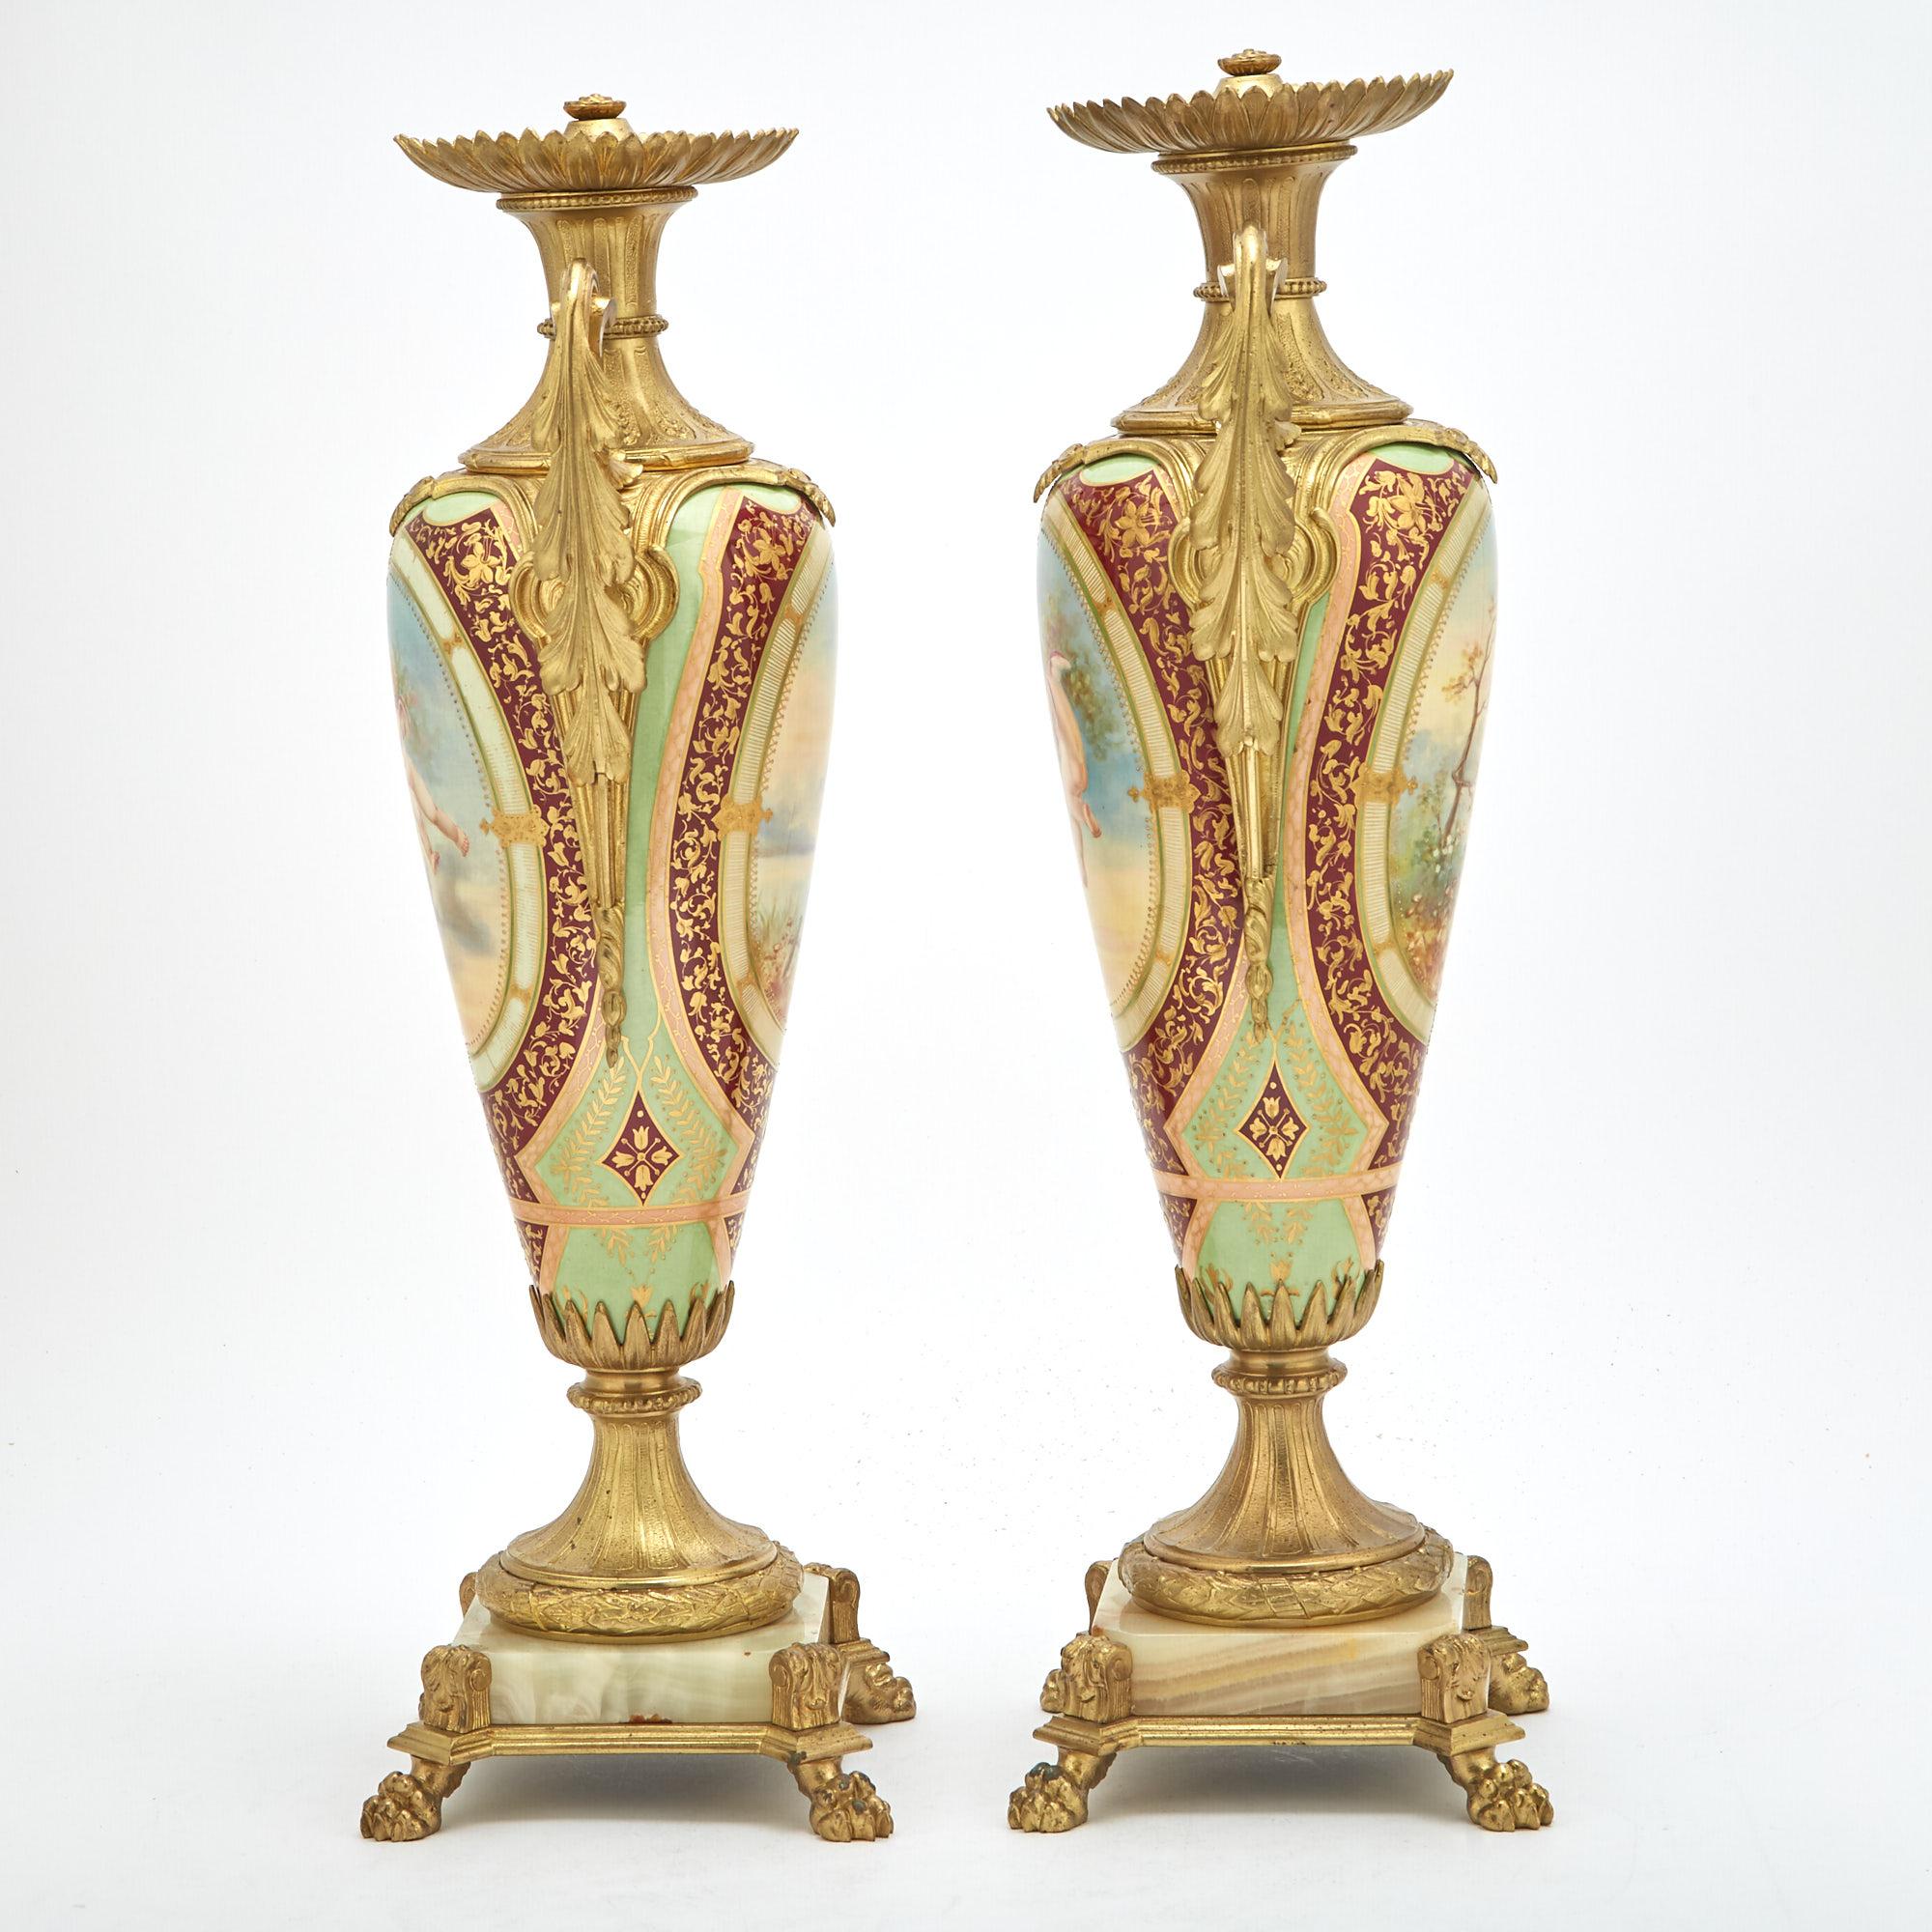 Tauchen Sie Ihren Raum in Opulenz mit diesem fesselnden Paar bronzefarbener Porzellanurnen im Louis-XVI-Stil. Jede Urne ist ein Meisterwerk mit einem sorgfältig gefertigten Bronzerahmen, der die Raffinesse der Epoche Ludwigs XVI. ausstrahlt. Die